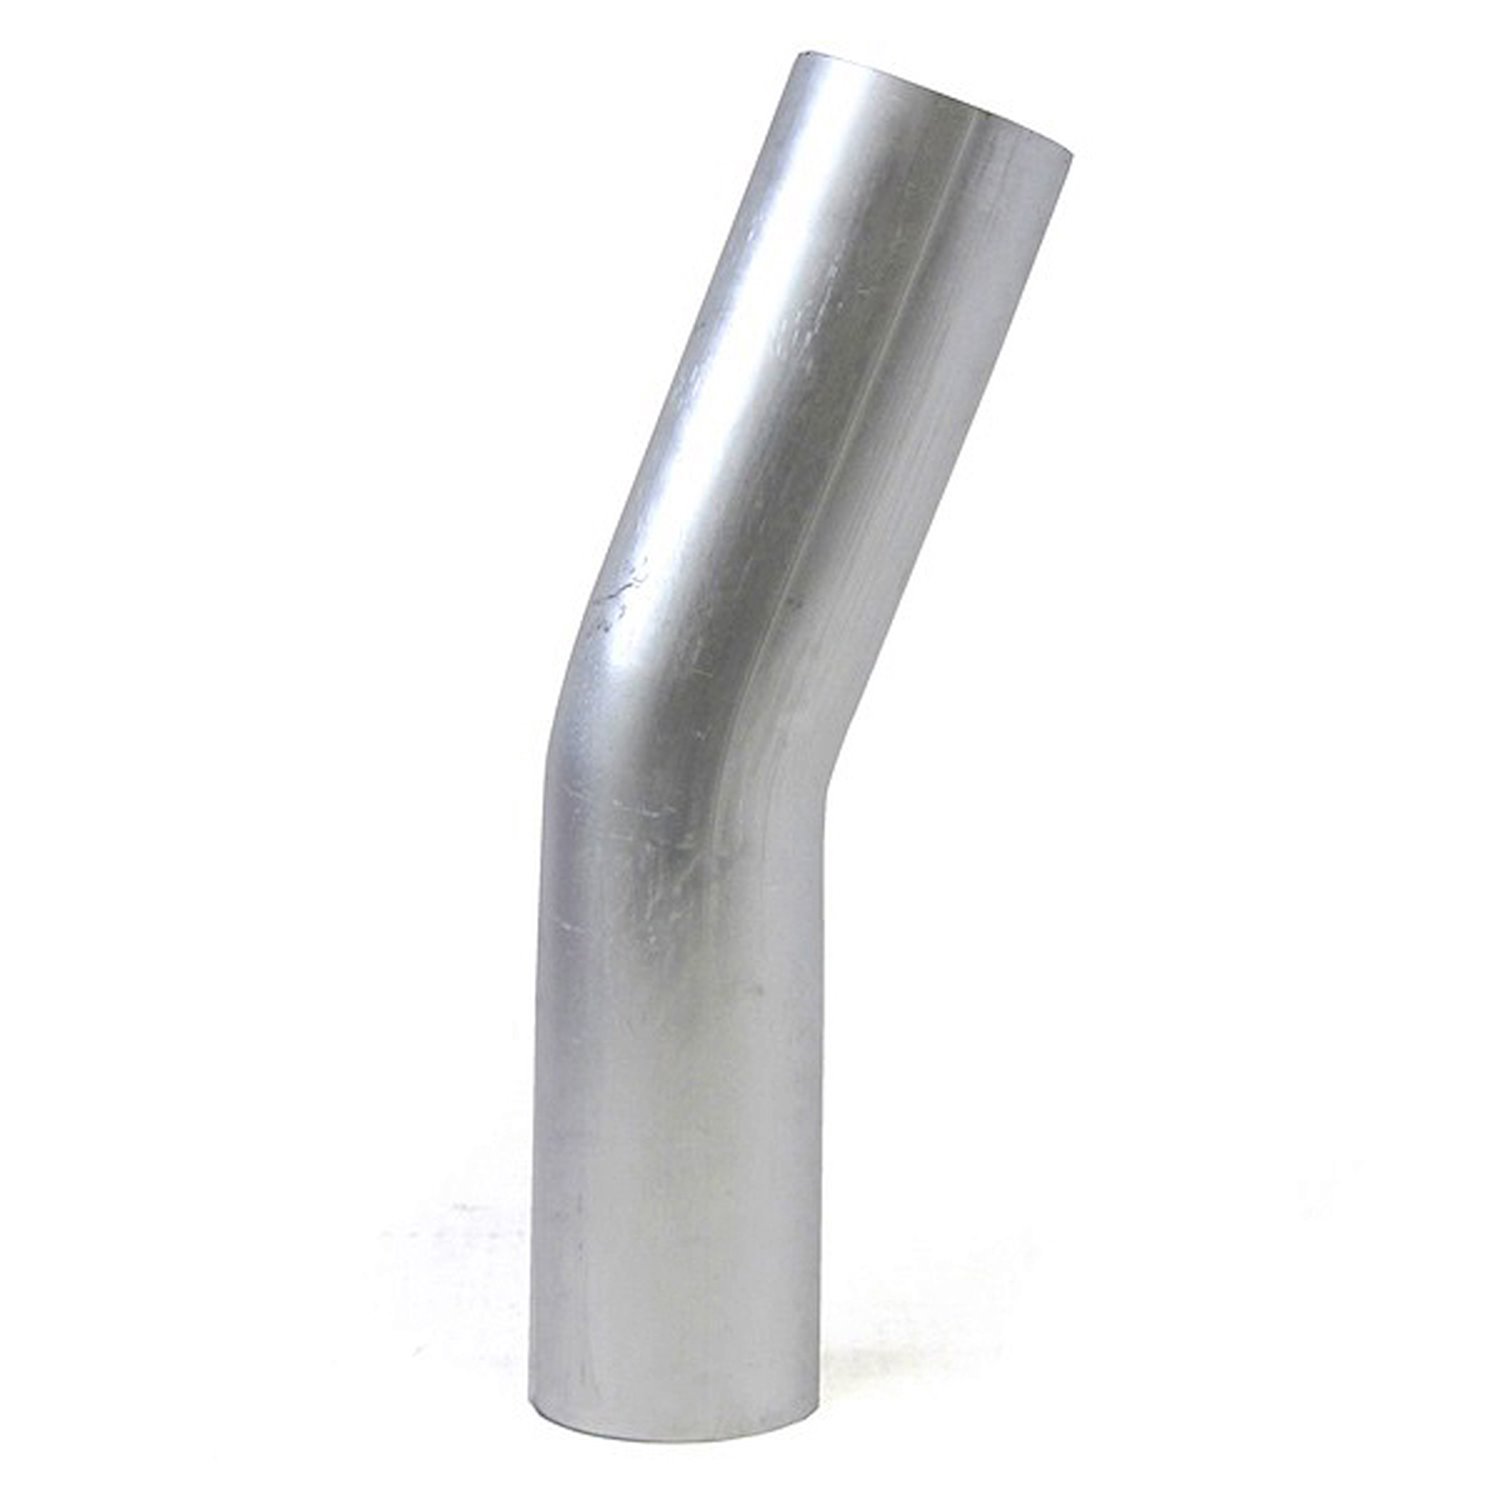 AT20-250-CLR-25 Aluminum Elbow Tube, 6061 Aluminum, 20-Degree Bend Elbow Tubing, 2-1/2 in. OD, Tight Radius, 2-1/2 in. CLR